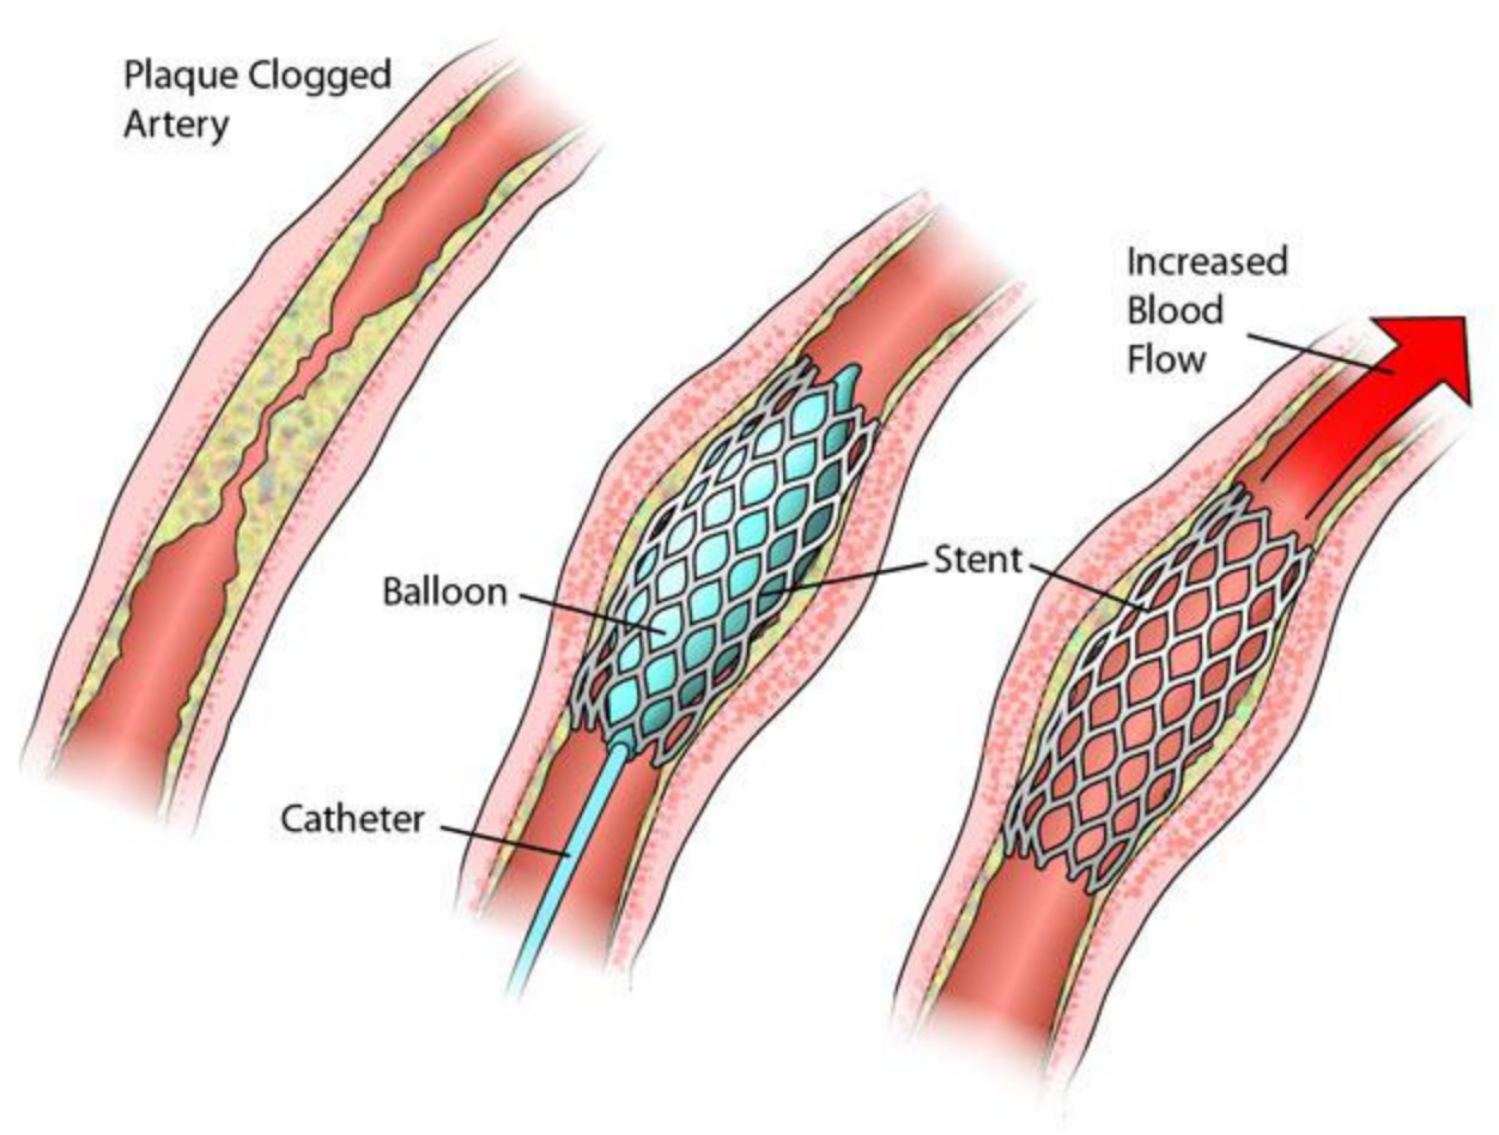 Nghiên cứu: Đặt stent động mạch cũng hiệu quả như phẫu thuật trong việc nong động mạch ở cổ.